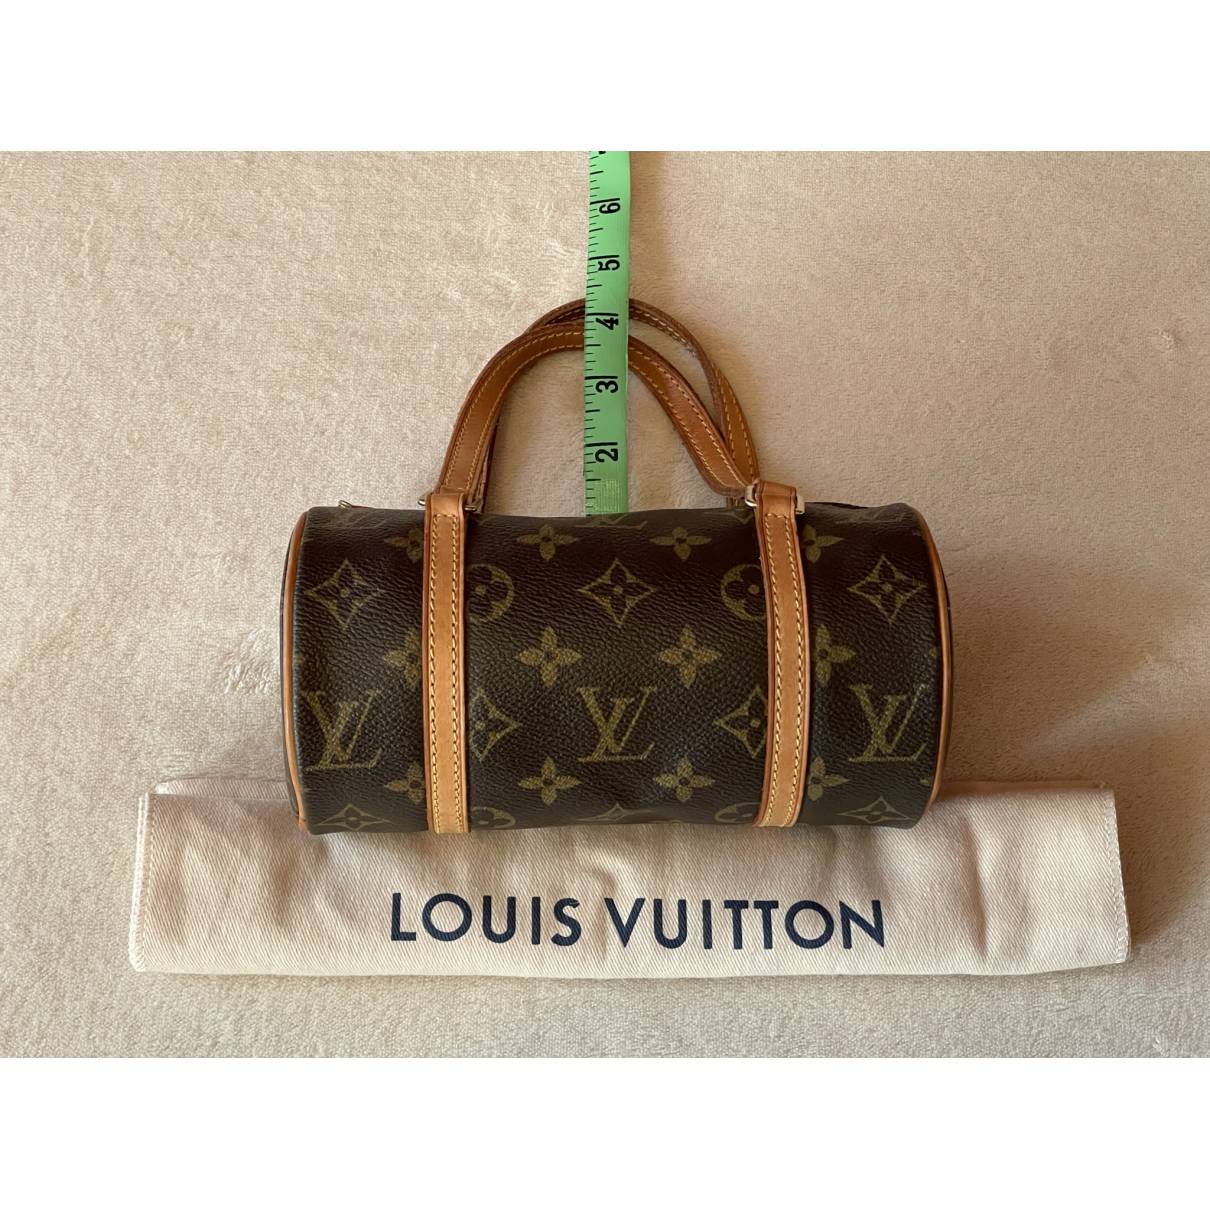 SOLD~CERTIFIED AUTH. Louis Vuitton Papillon 30  Louis vuitton monogram, Louis  vuitton papillon, Louis vuitton bag